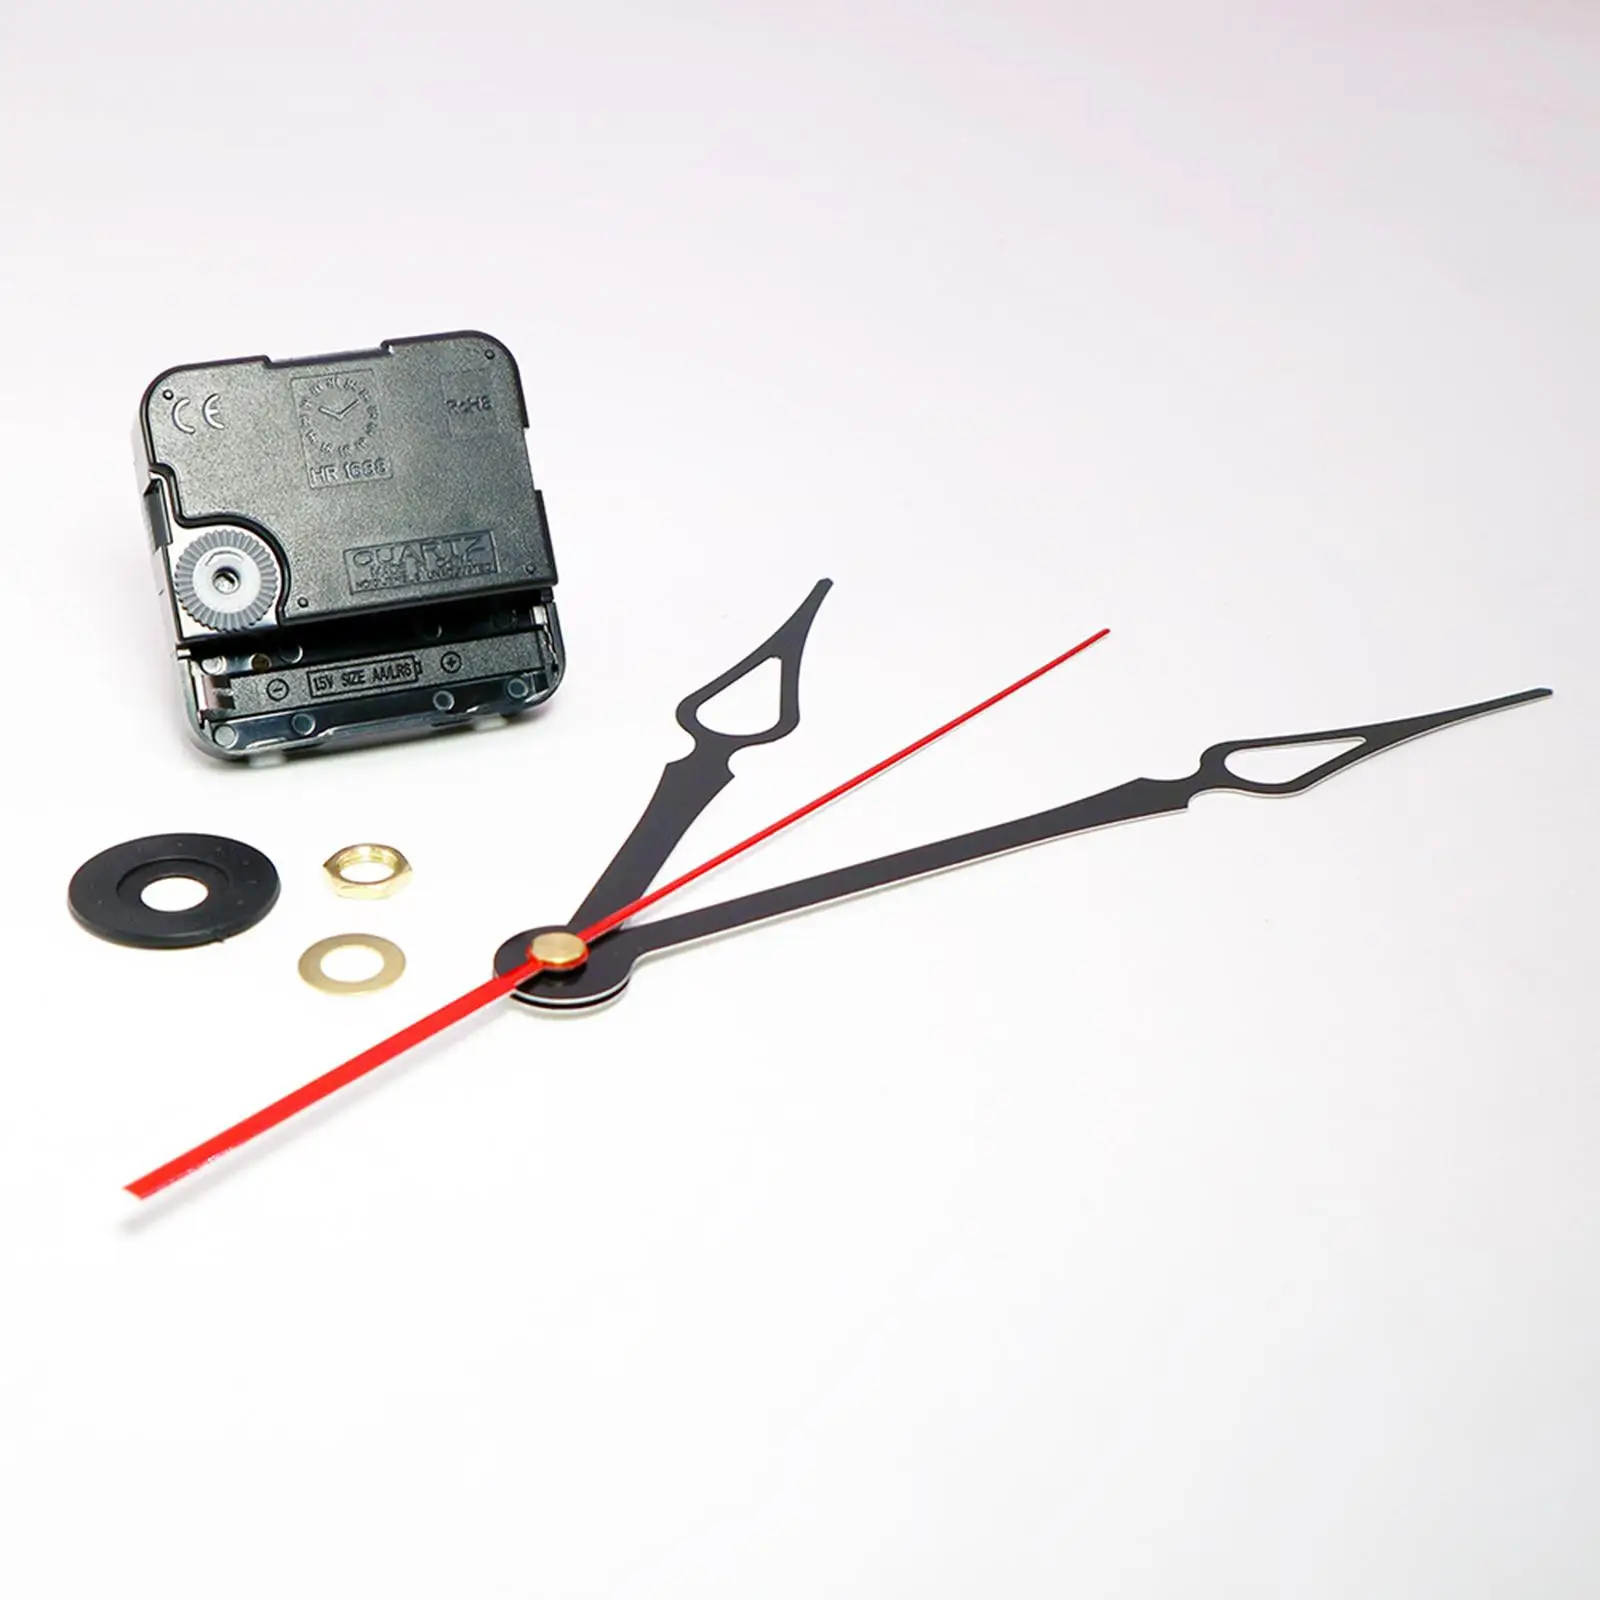 Wall Clock Movement, 24-Hour Clock DIY Replacement Repair Kit Parts - Hands, Motor and Mechanism